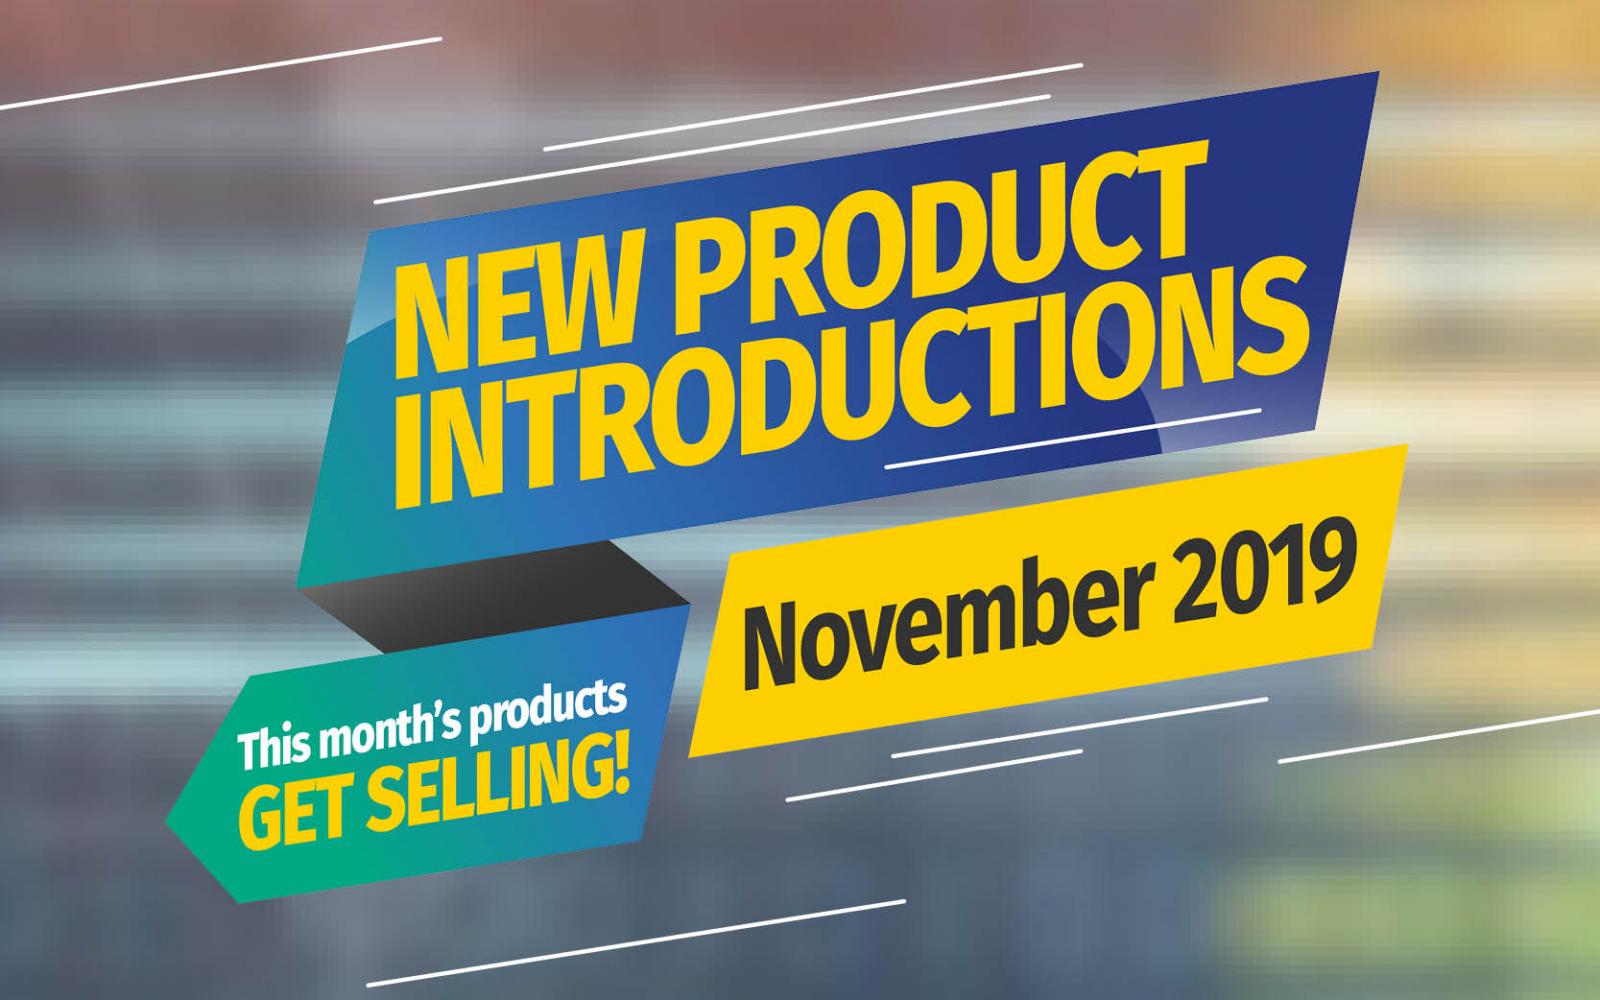 Featured Image: Neue Produkteinführungen - November 2019